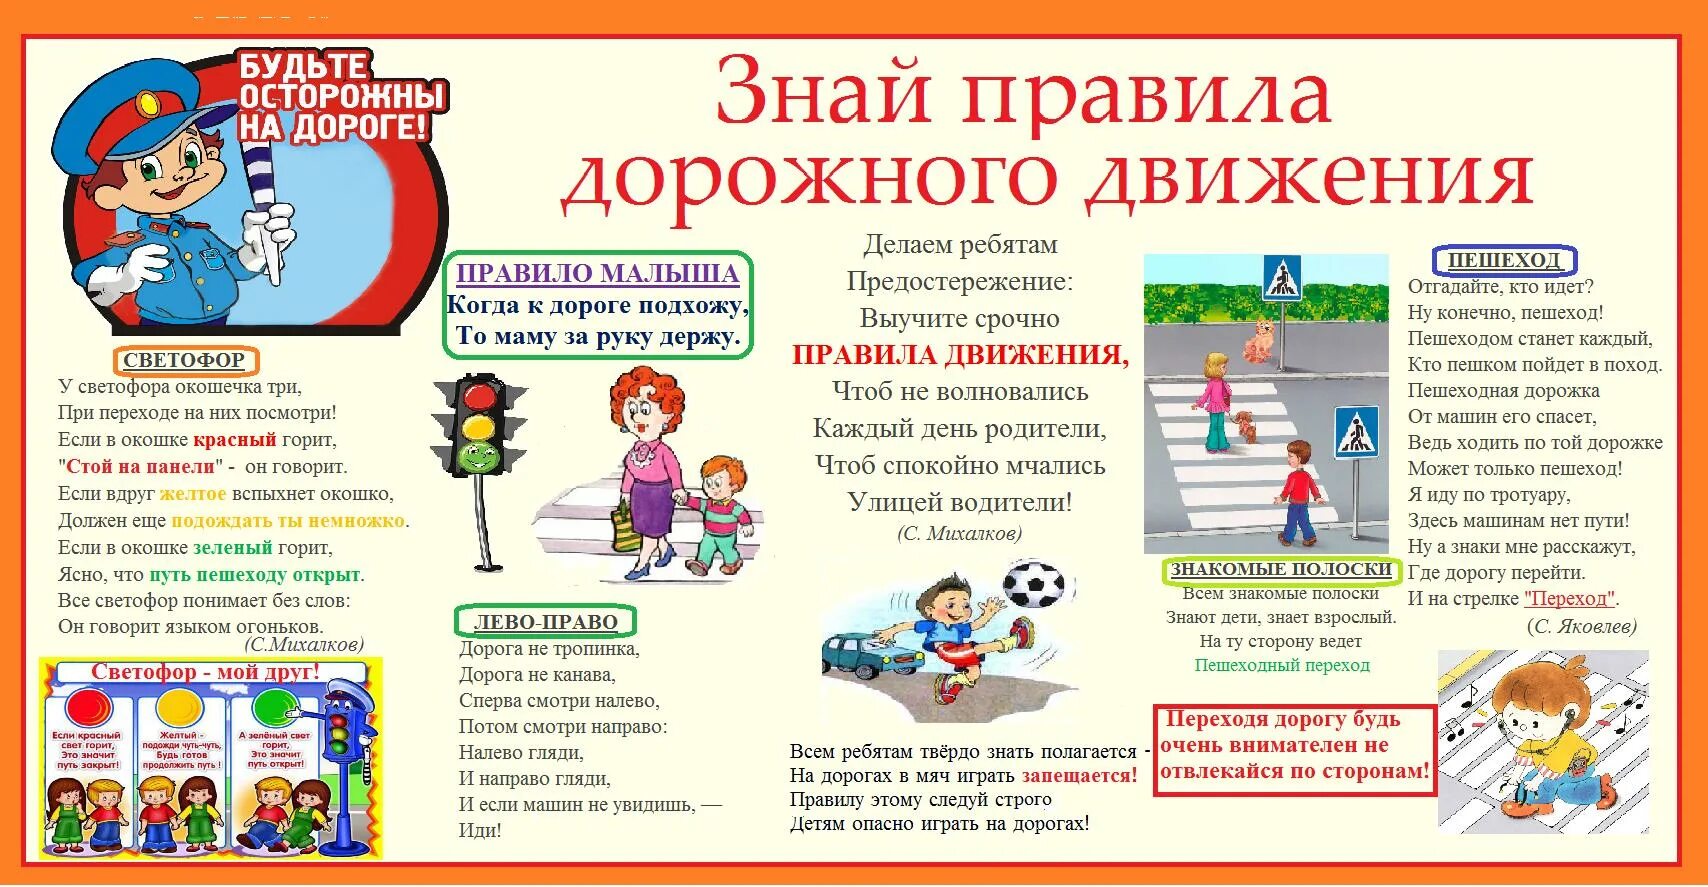 Бдд 1 4 класс мау до дтд. Правила дорожного движения для детей. Плакат по правилам дорожного движения для школьников. Плакат по правилам дорожного движения для детей. ПДД правила дорожного движения.